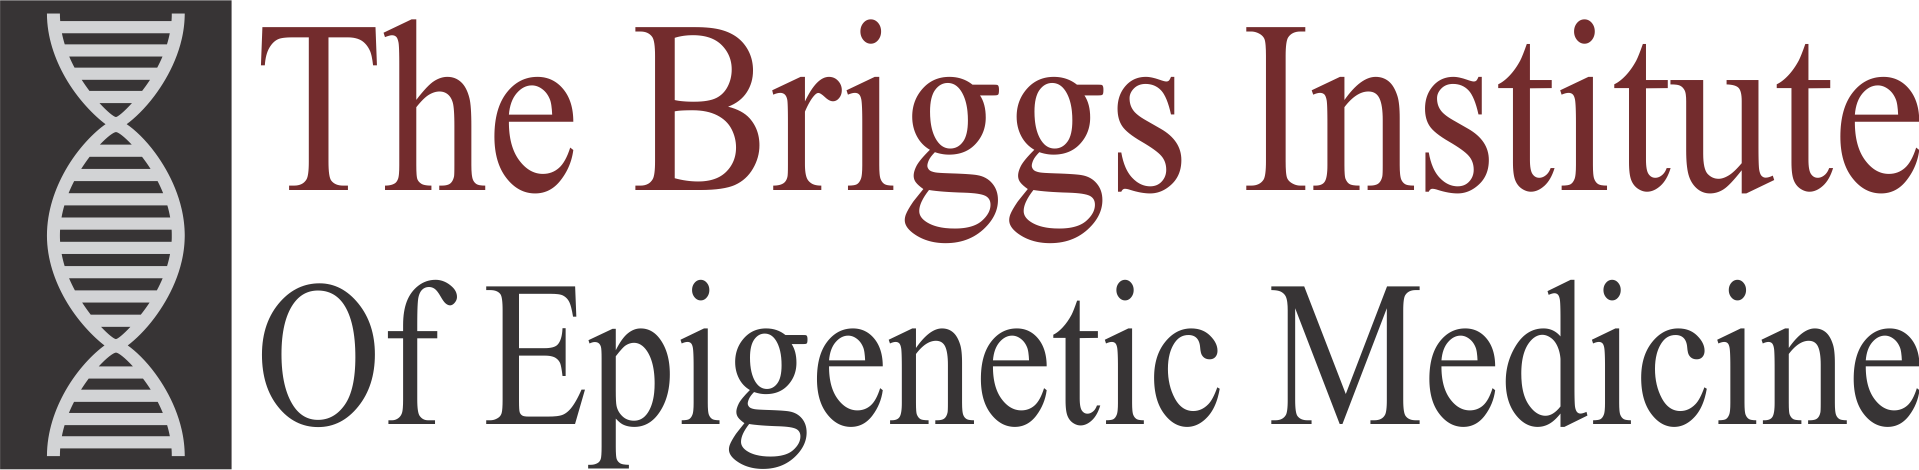 The Briggs Institute of Epigenetic Medicine